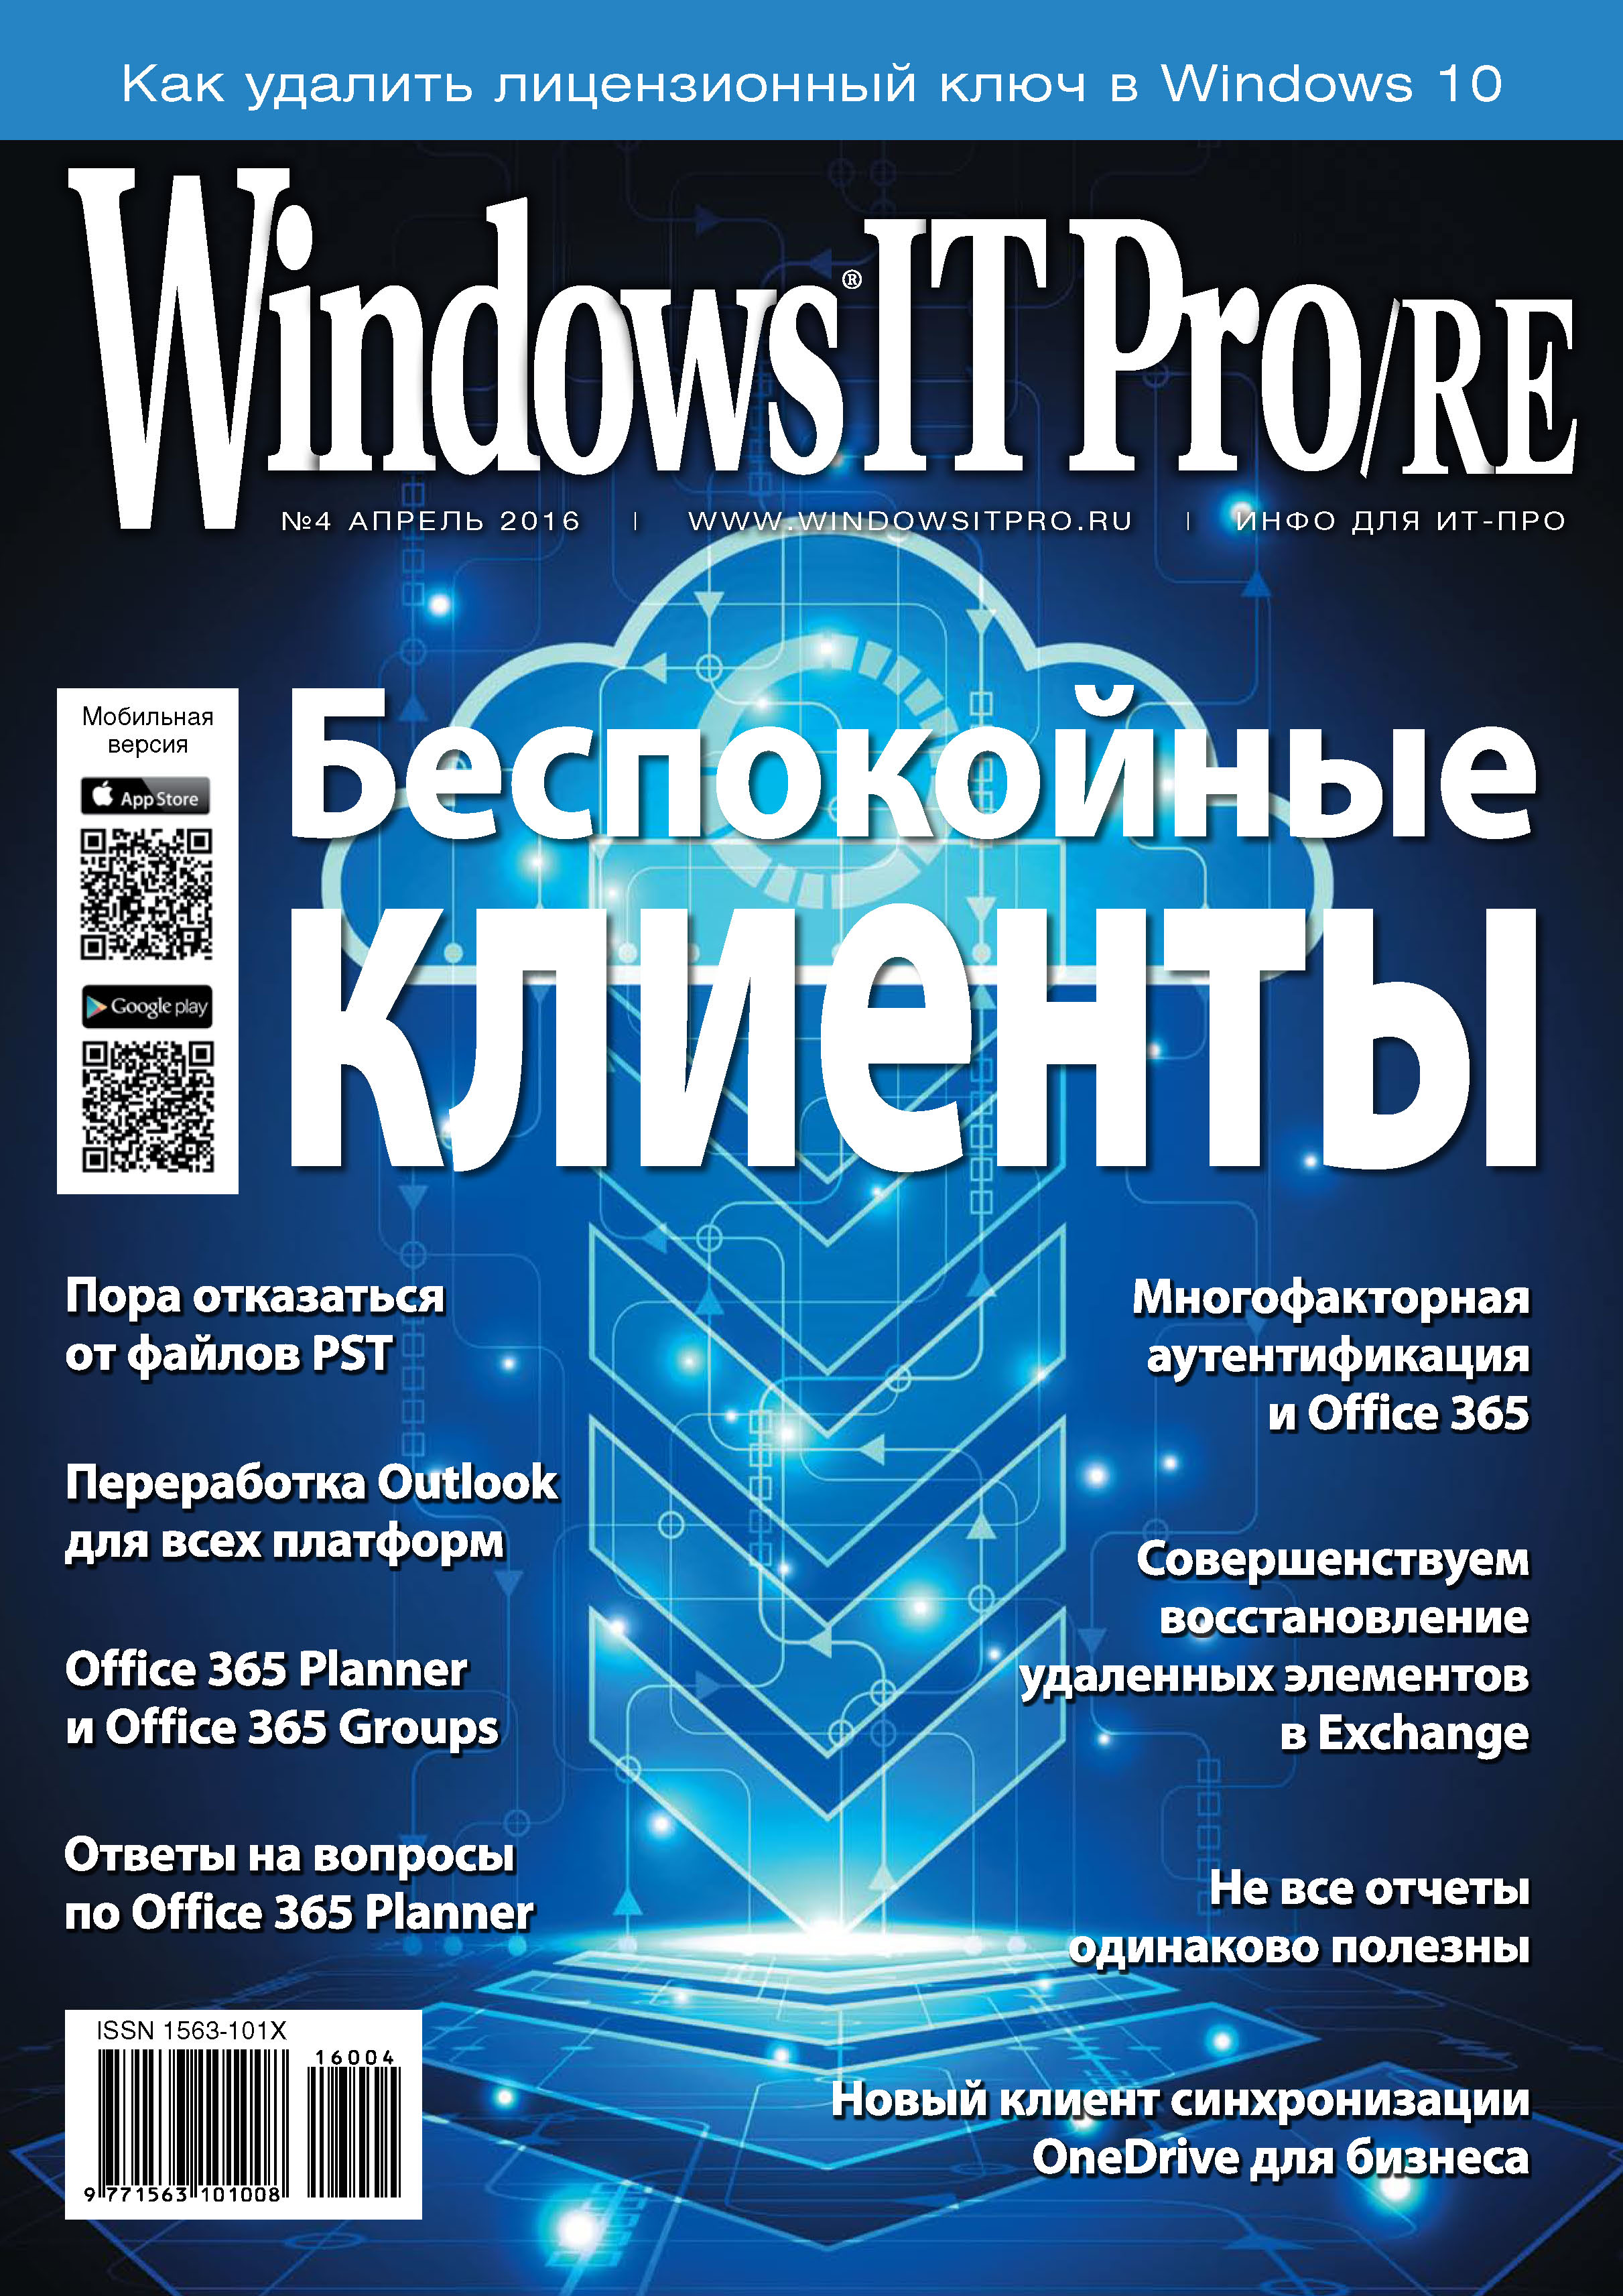 Windows IT Pro/RE№04/2016